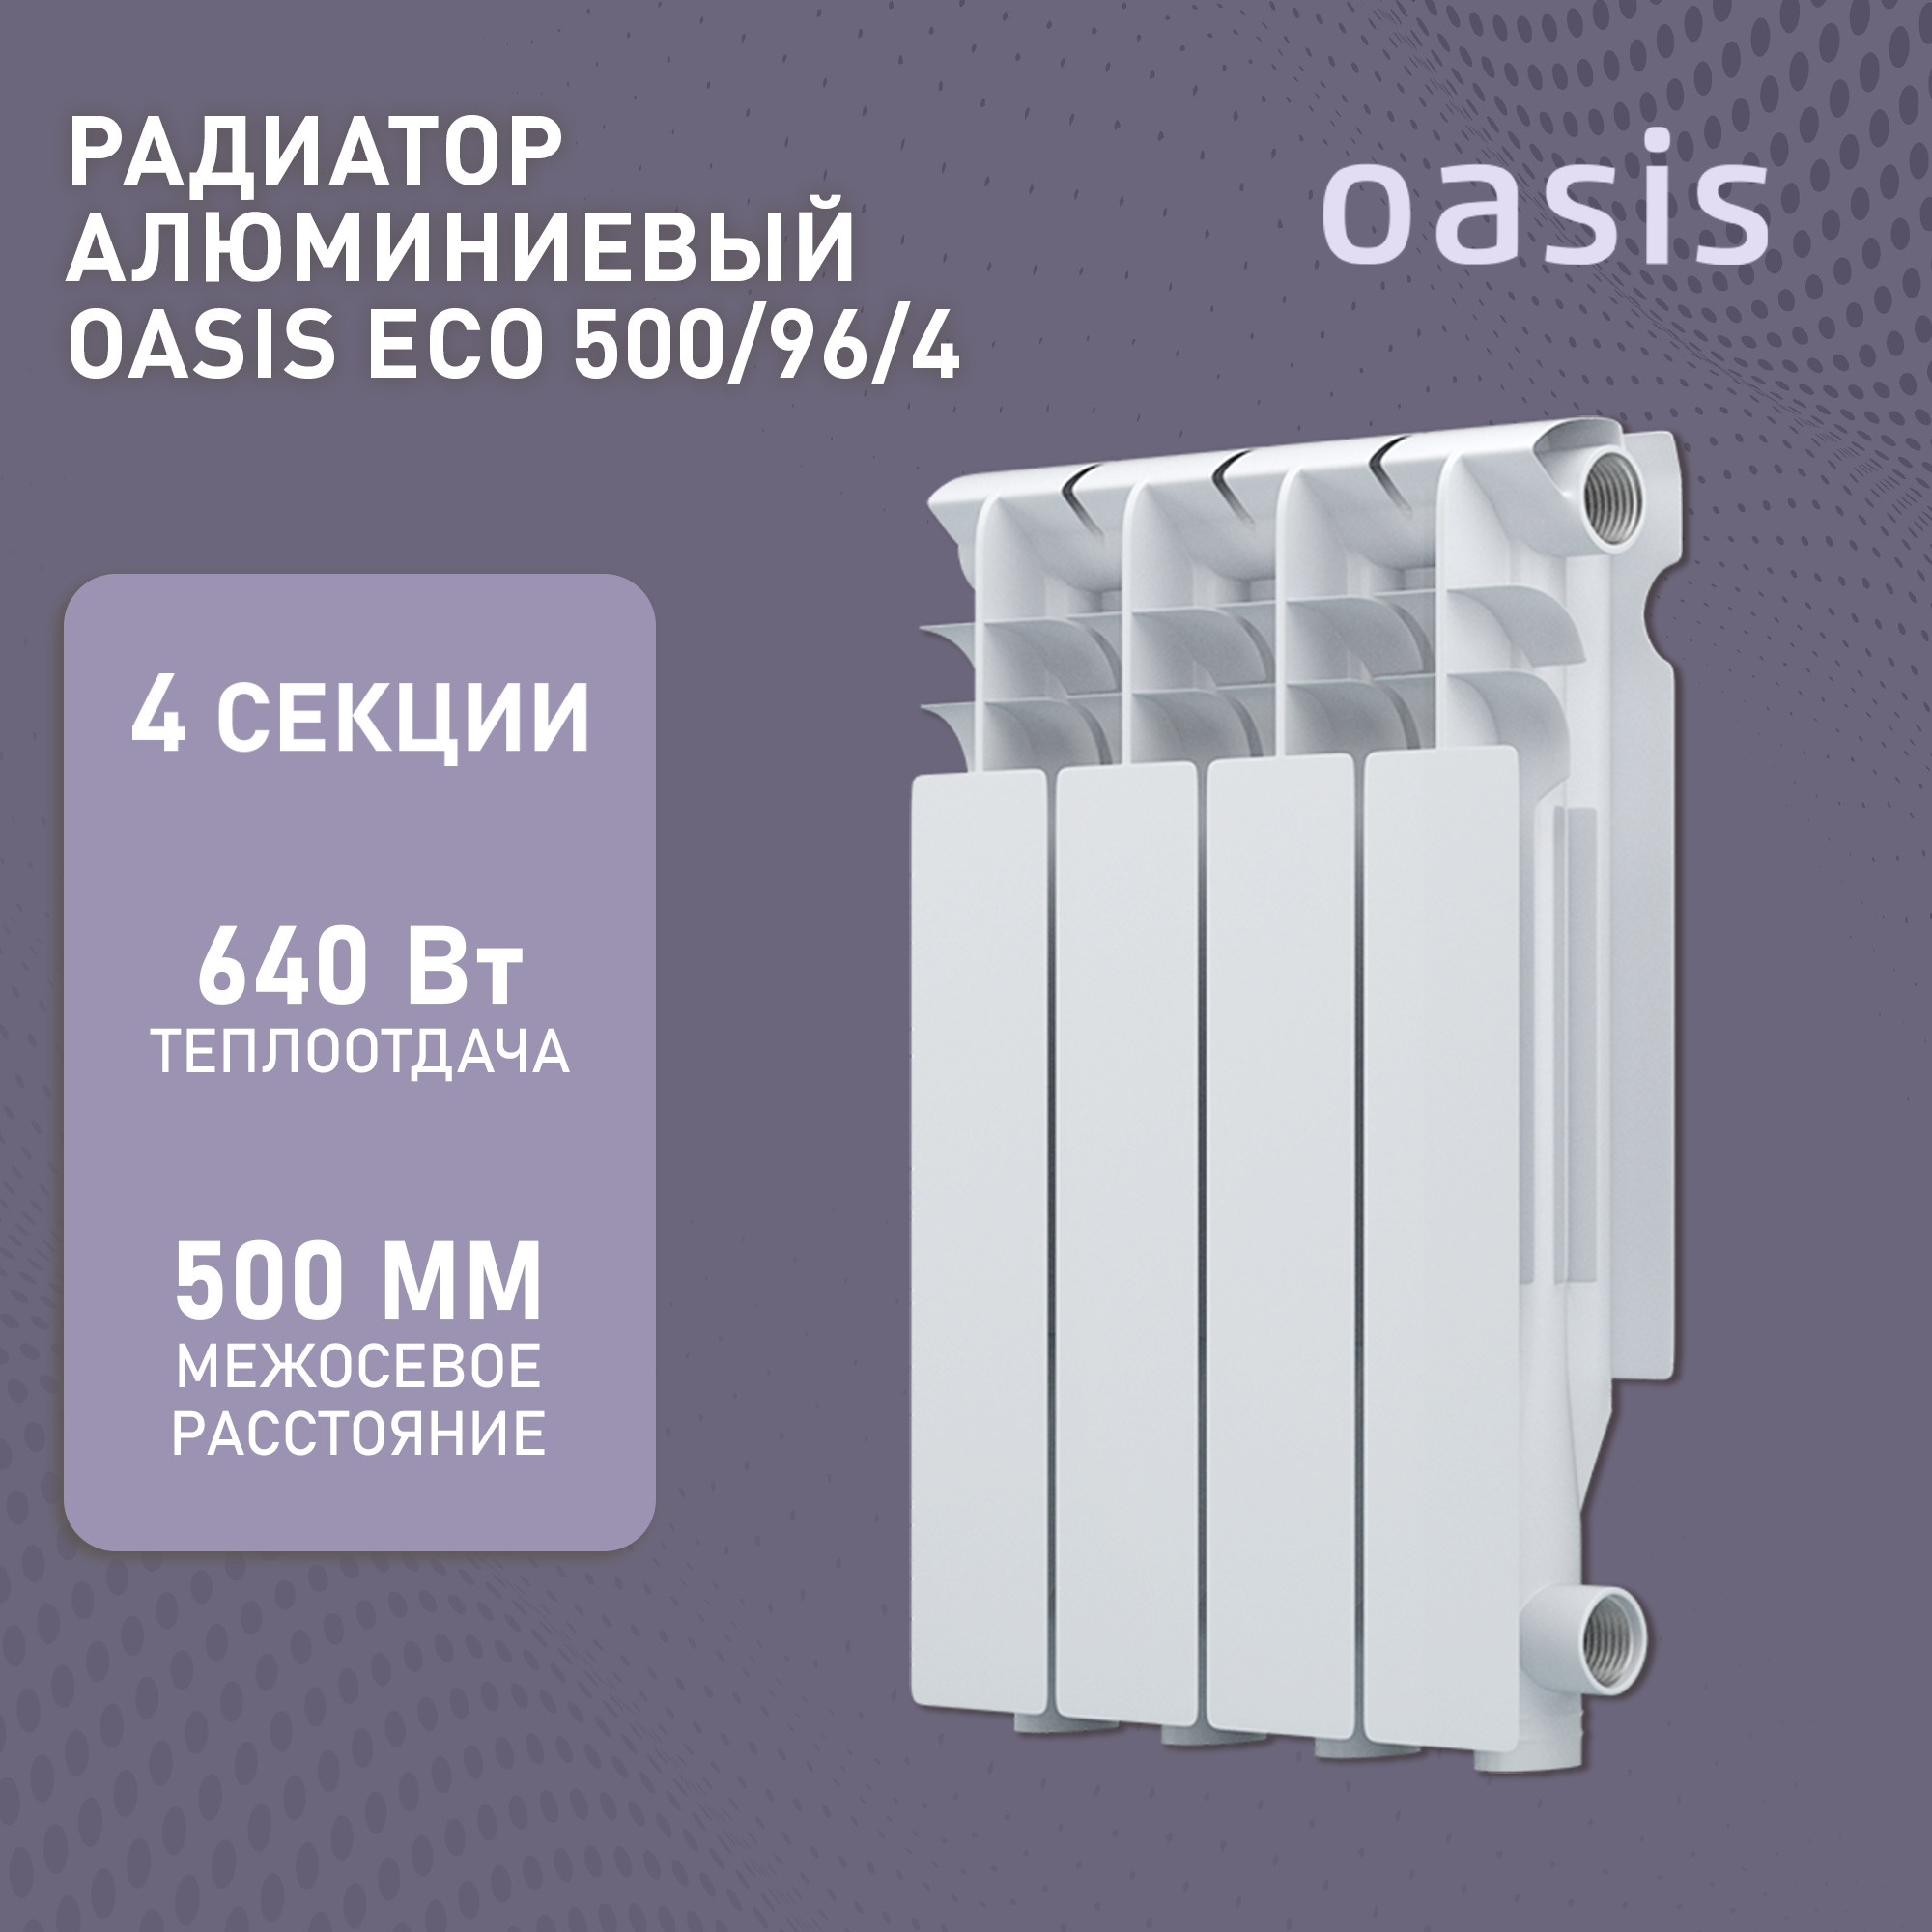 Радиатор алюминиевый OASIS ECO 500/96 640Вт 4 секции